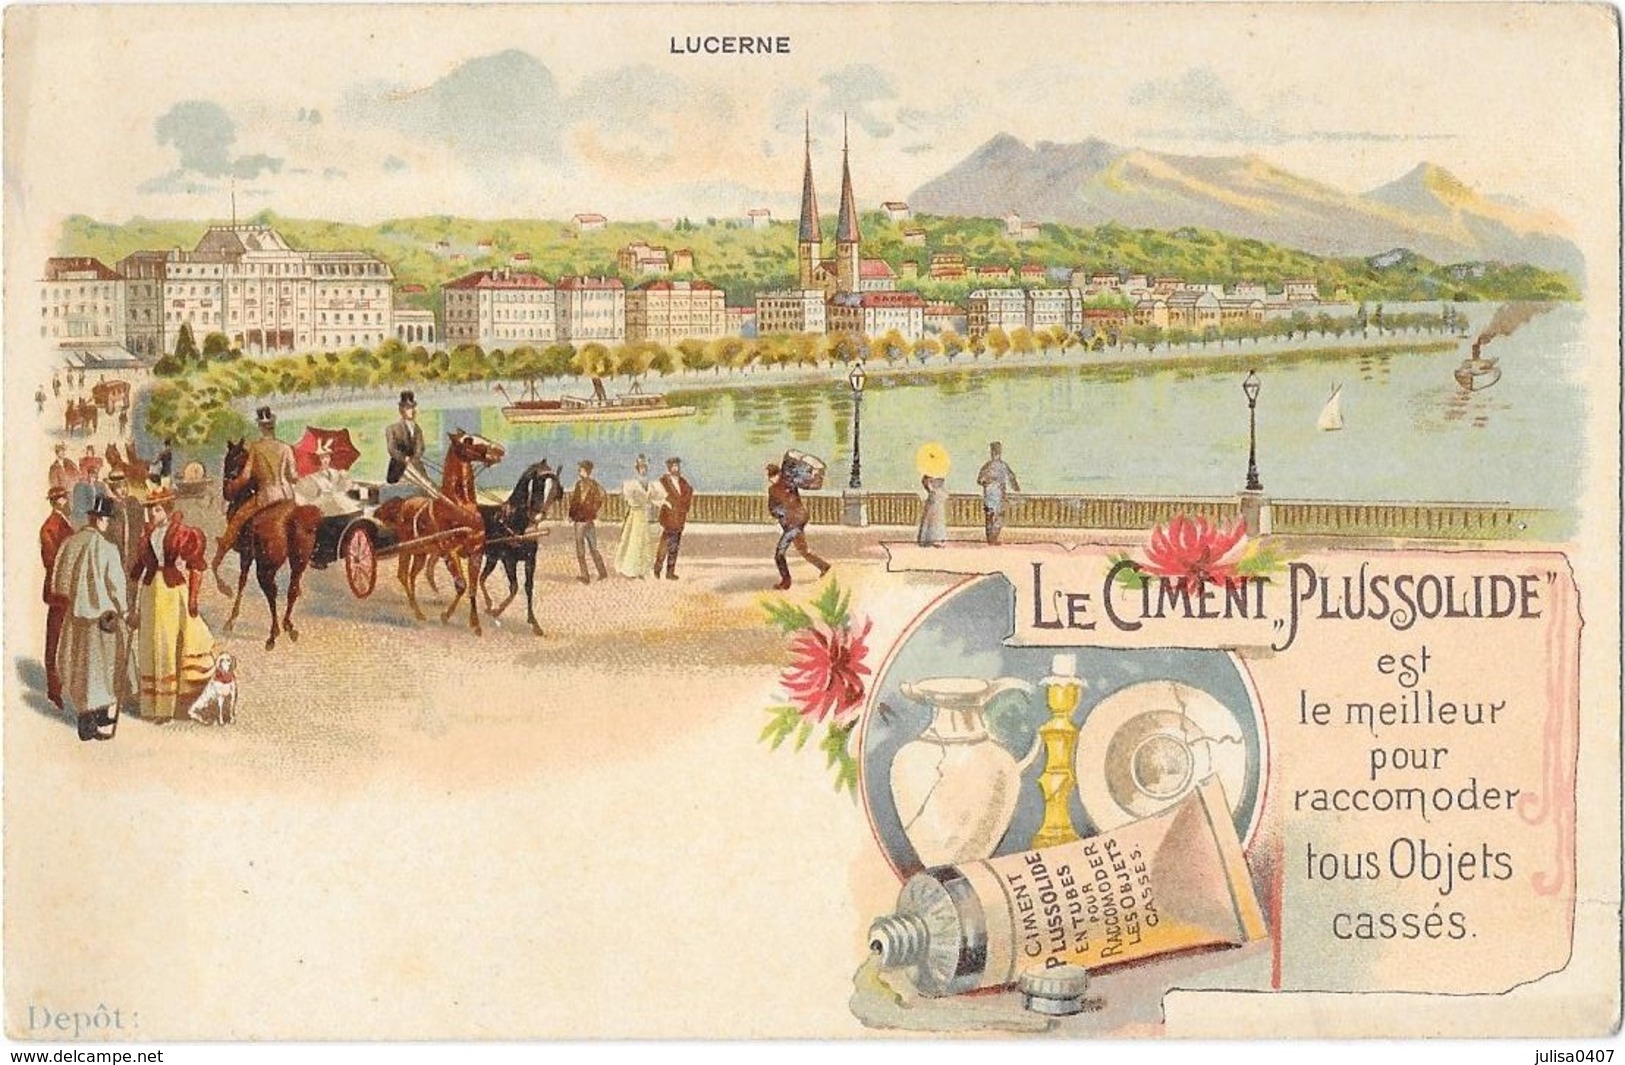 LUCERNE (Suisse) Carte Publicitaire Illustrée Le Ciment Plussolide - Luzern